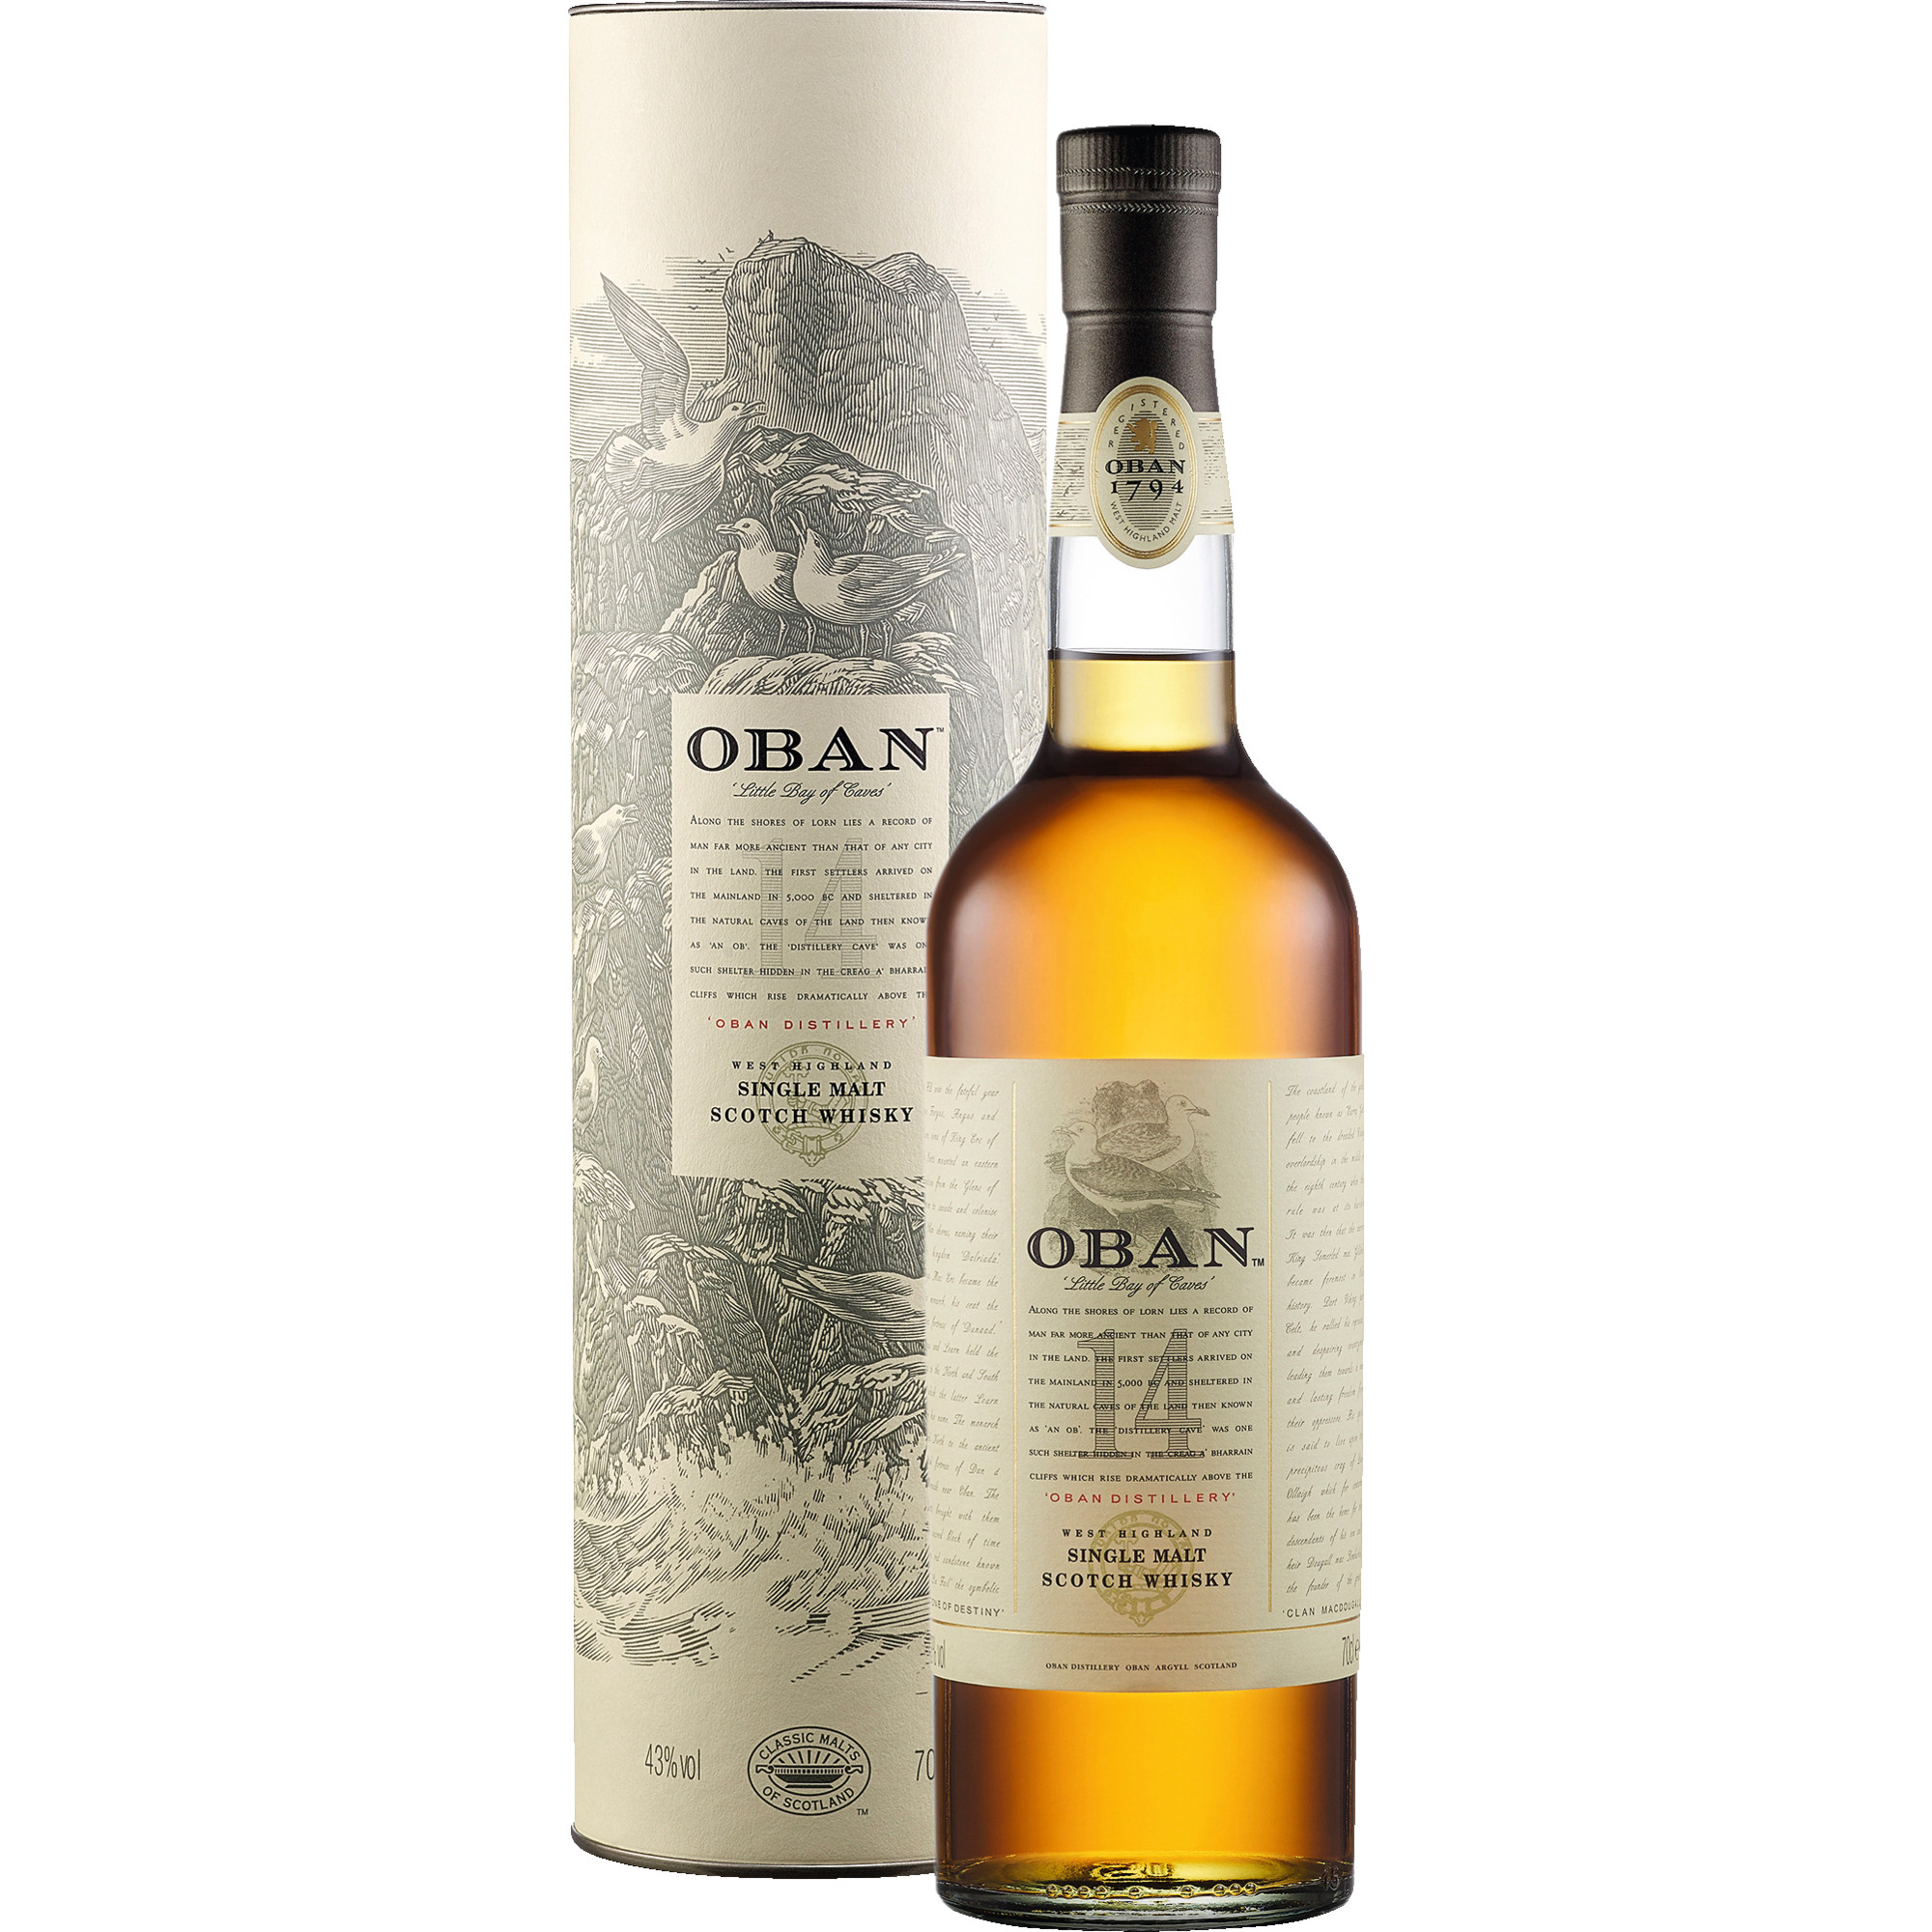 Oban Highland Single Malt Scotch Whisky 14 Years, 43 % vol. 0,7 L, Schottland, Spirituosen